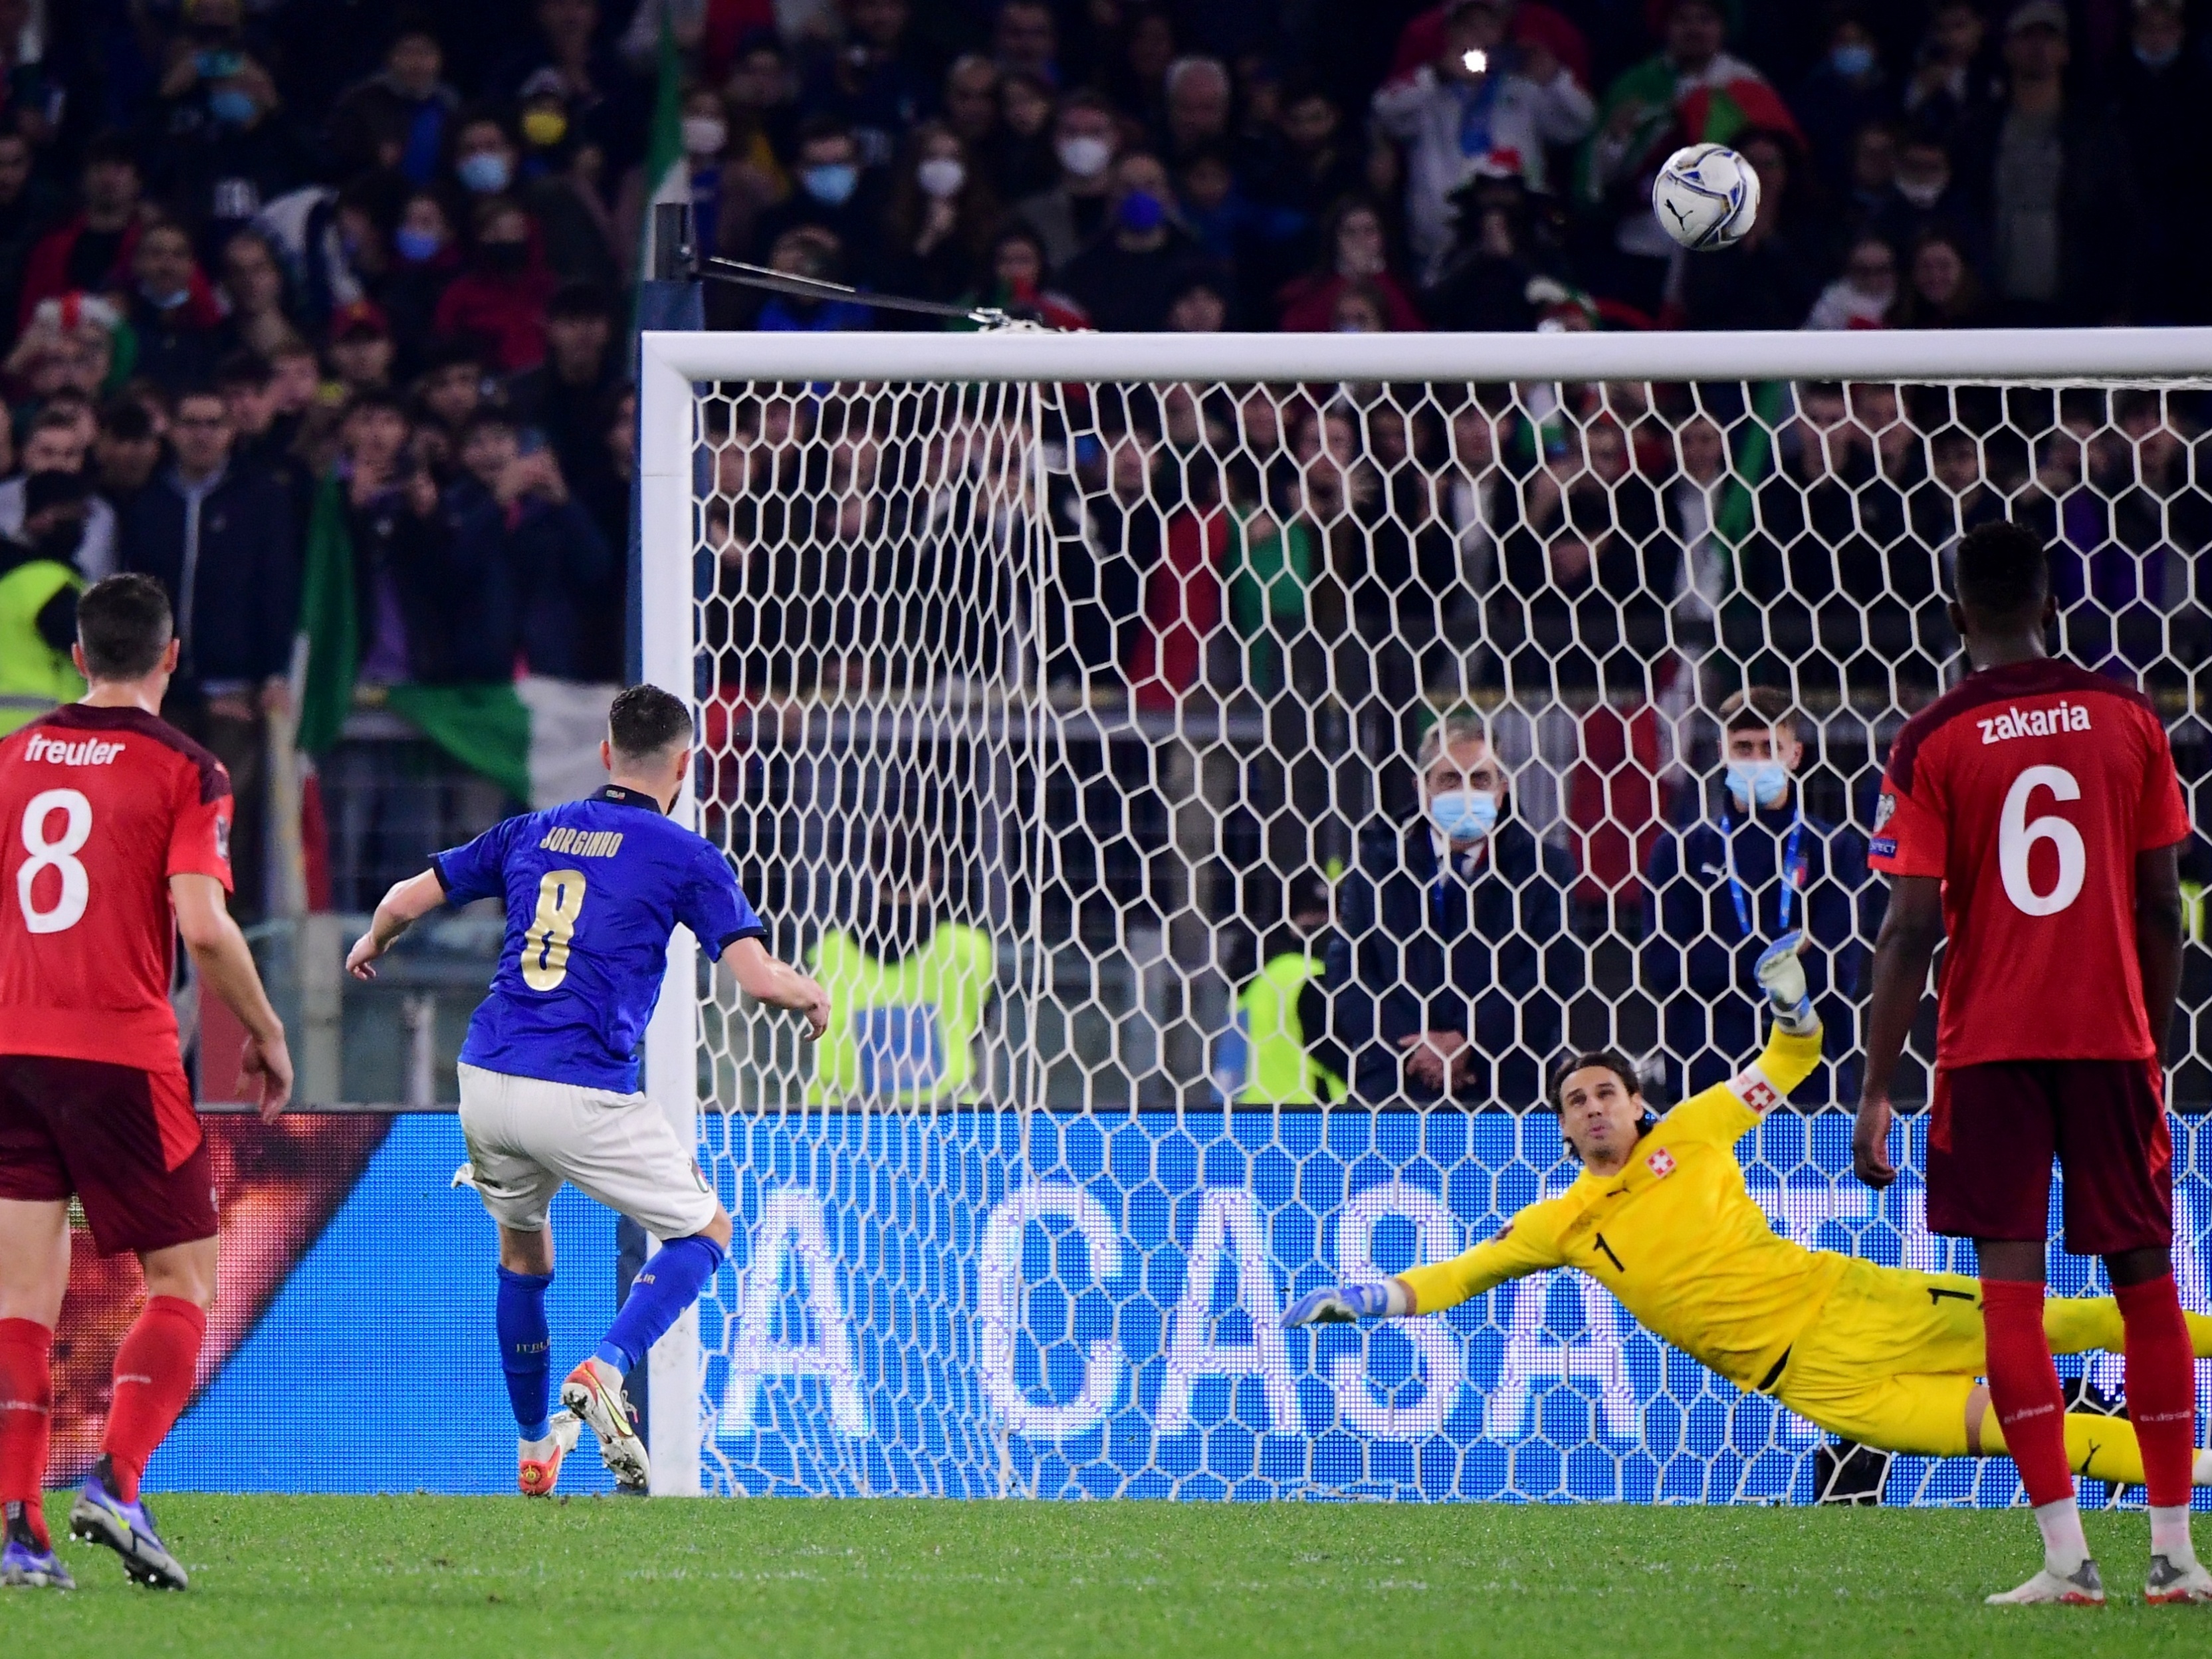 Itália voa para o Europeu e vai jogar com a bola que vai mudar o